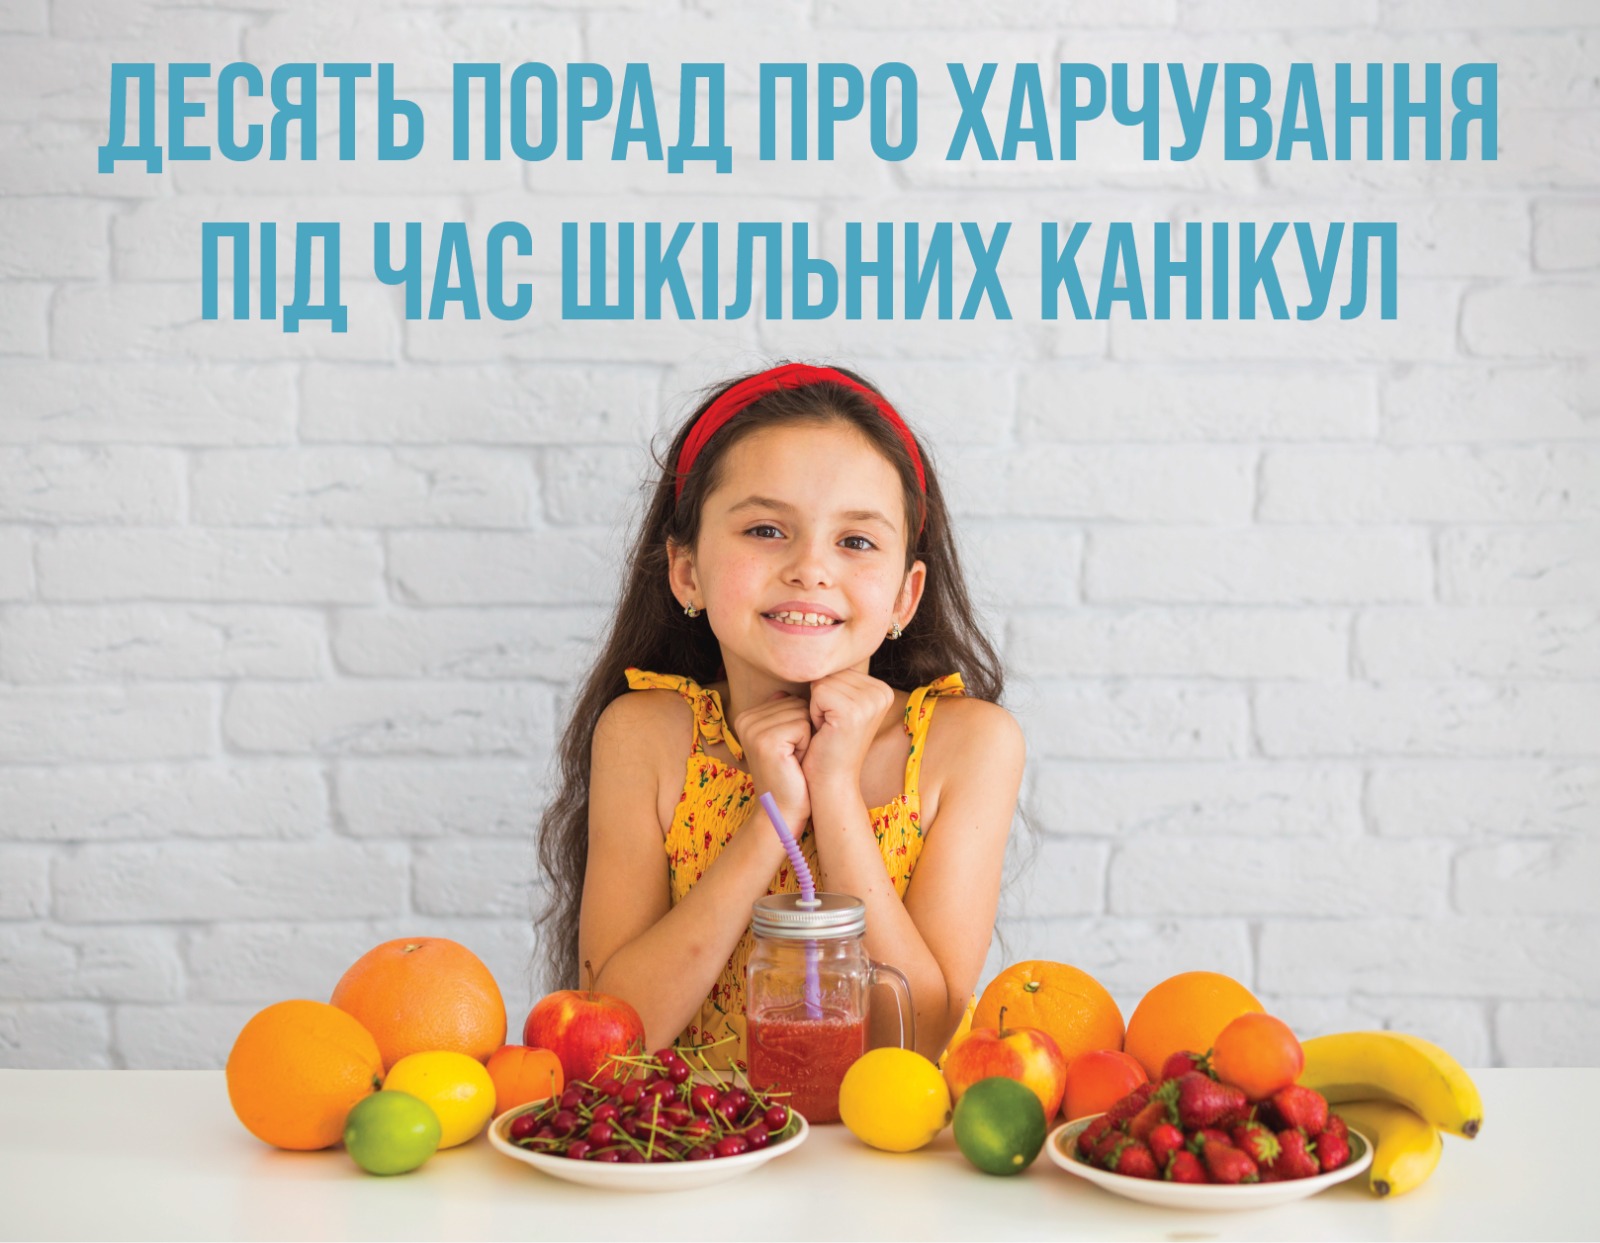 На зображенні дитина перед якою на столі різні фрукти, у верхній частині напис: десять порад про харчування під час шкільних канікул